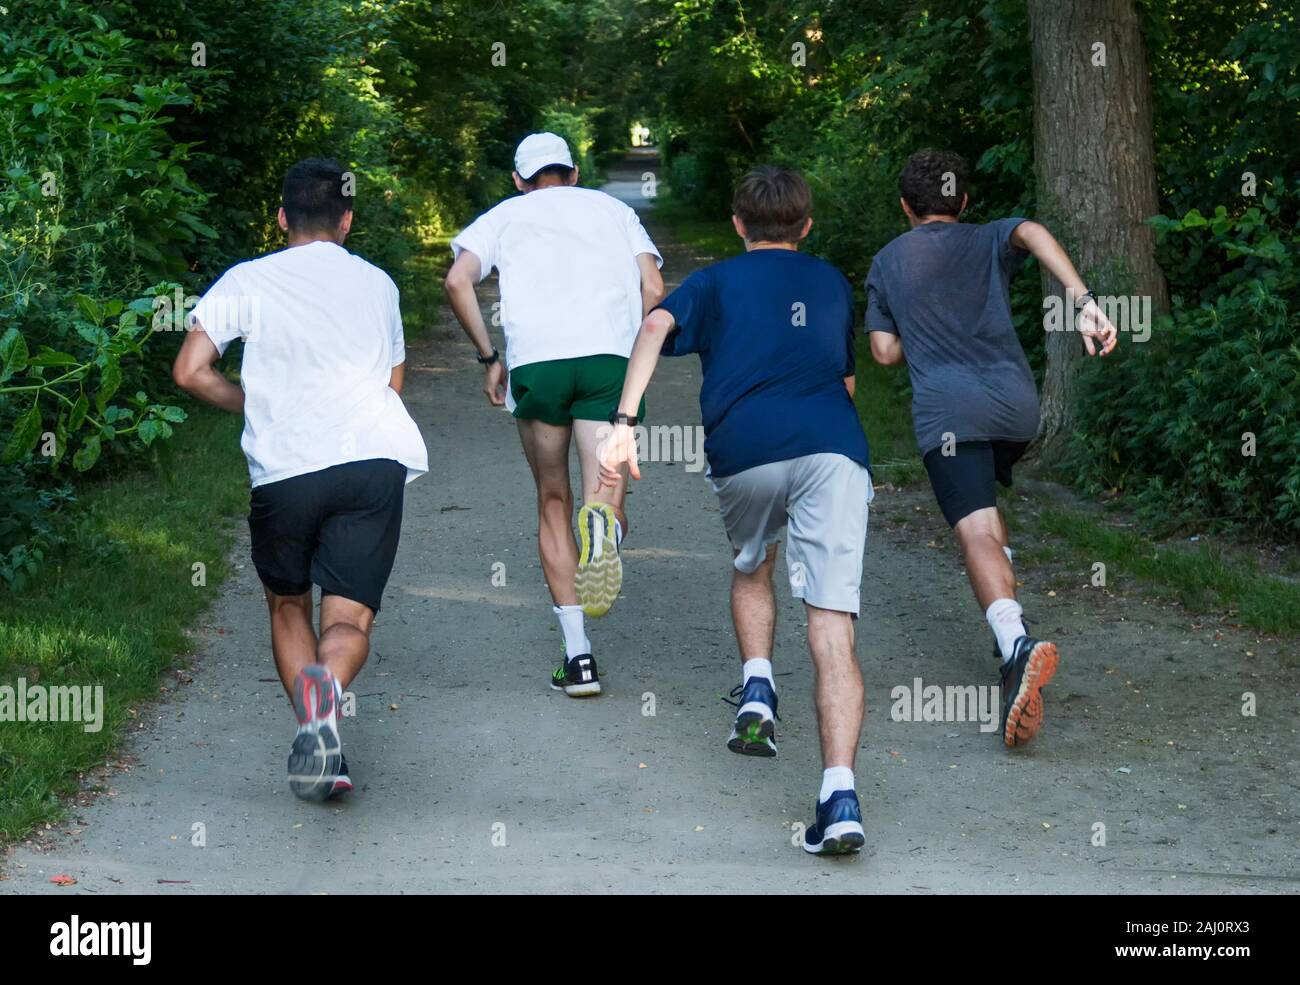 Quattro ragazzi adolescenti stanno iniziando un intervallo corrono verso un viale alberato percorso sporco in un parco locale. Foto Stock